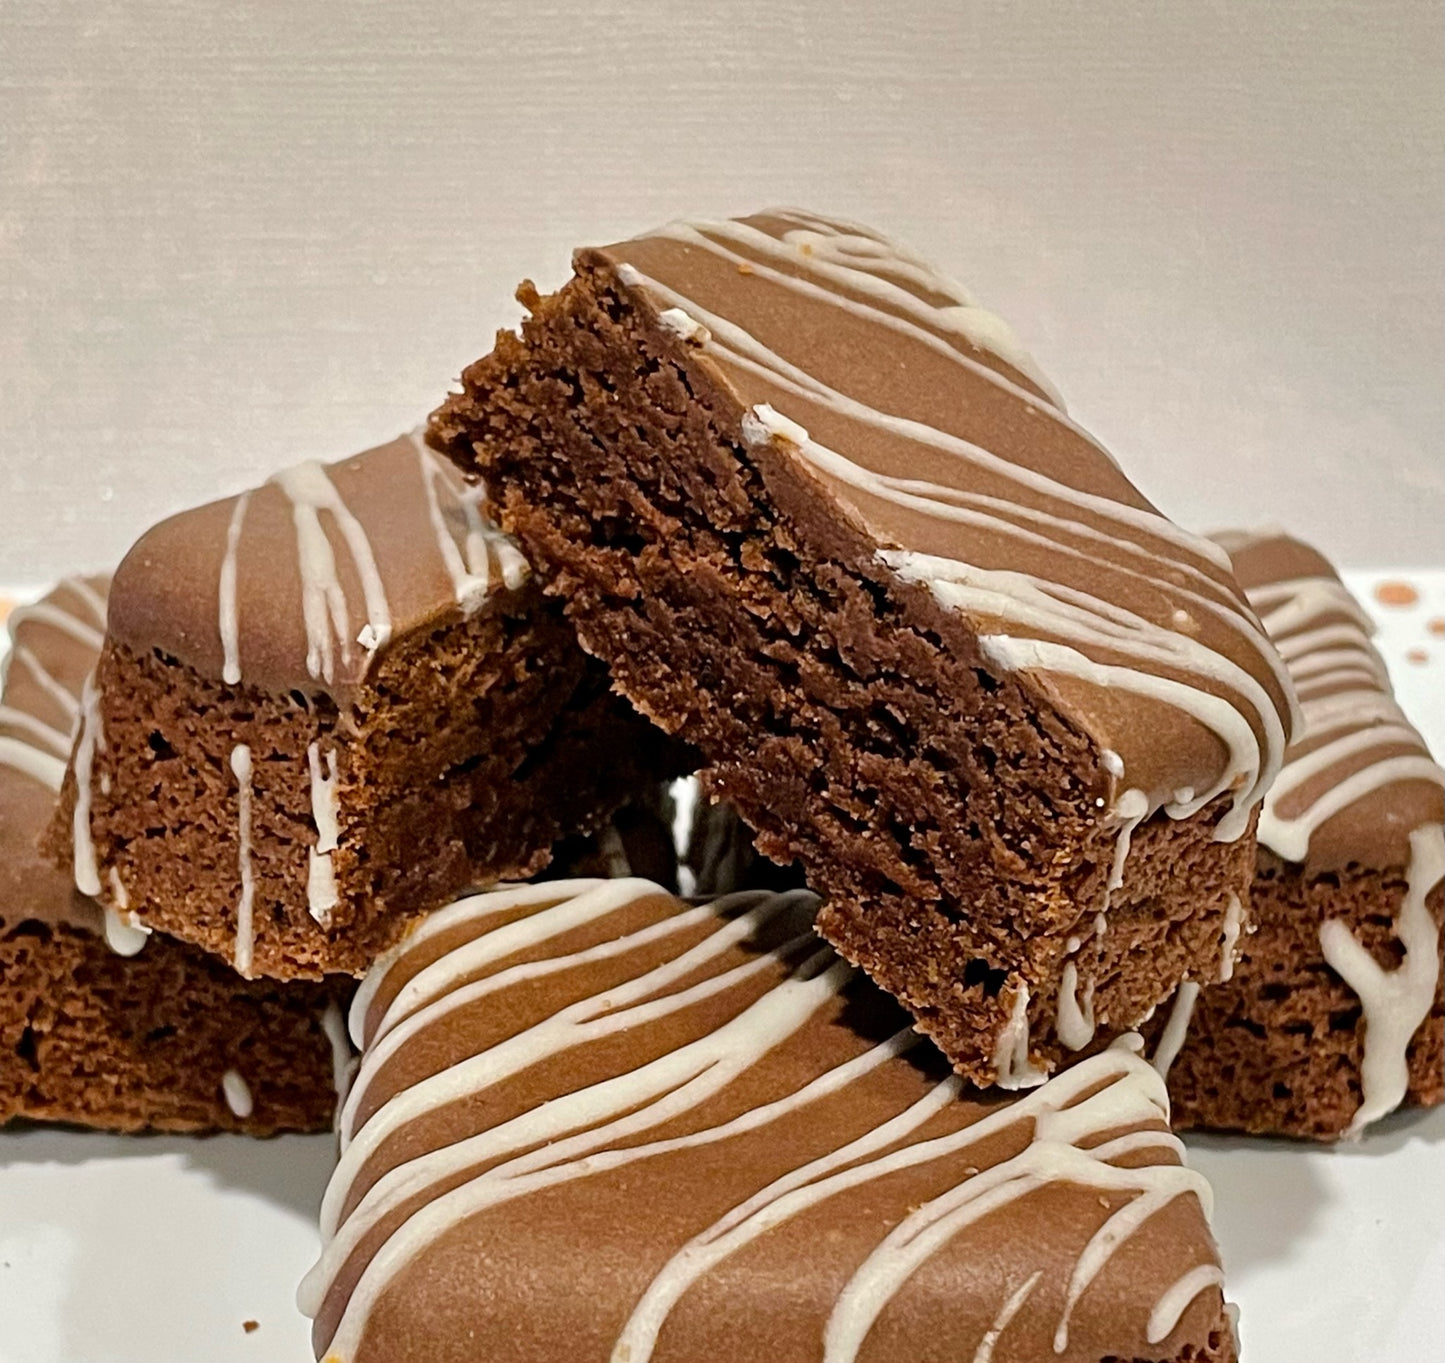 Chocolate Fudge Brownies